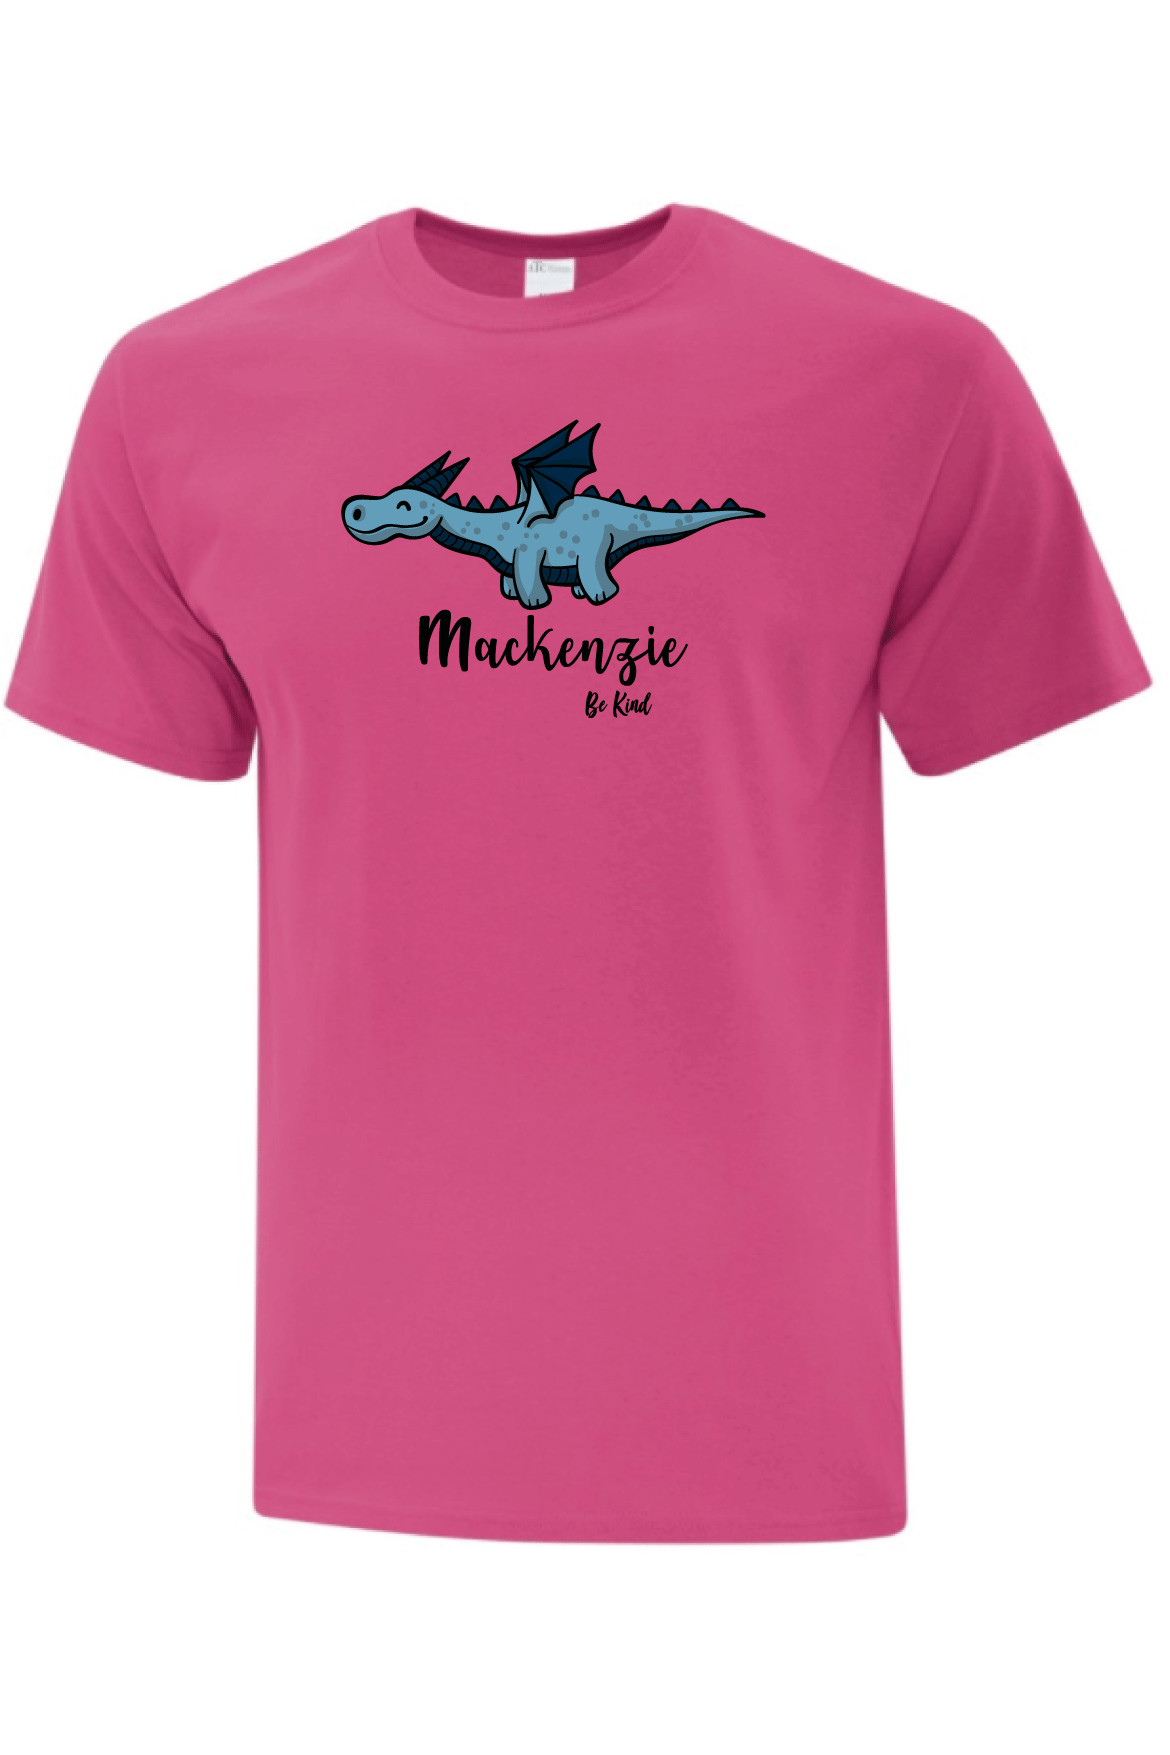 Mackenzie Youth T-Shirt (Be Kind Logo) - Oddball Workshop